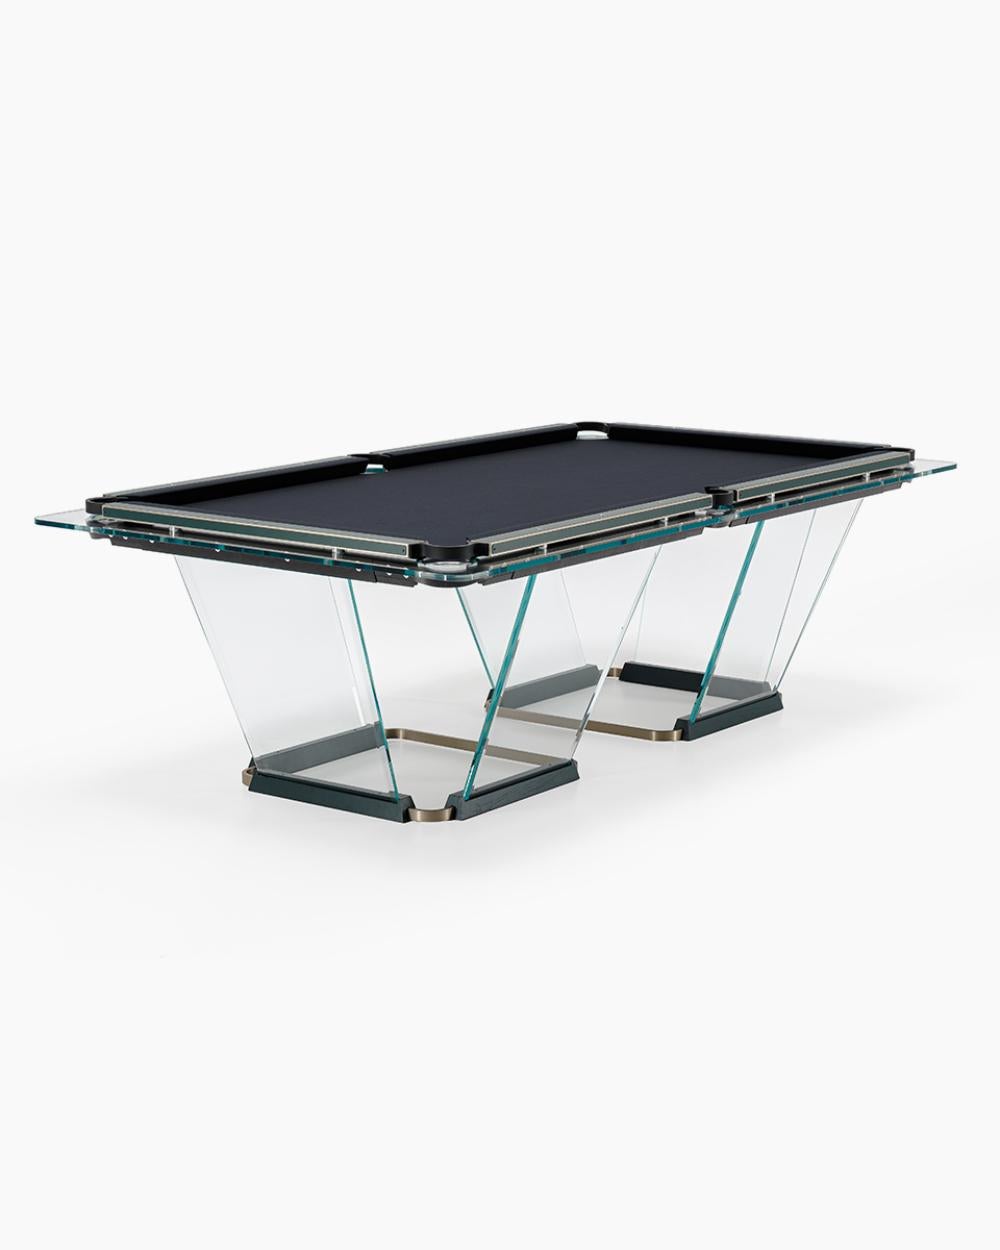 T.1.3  est une table de billard entièrement en verre, dont la surface de jeu est spécialement traitée pour reproduire le frottement du tissu traditionnel.
Les pieds sont des feuilles de verre biseautées des deux côtés qui s'auto-stabilisent, le